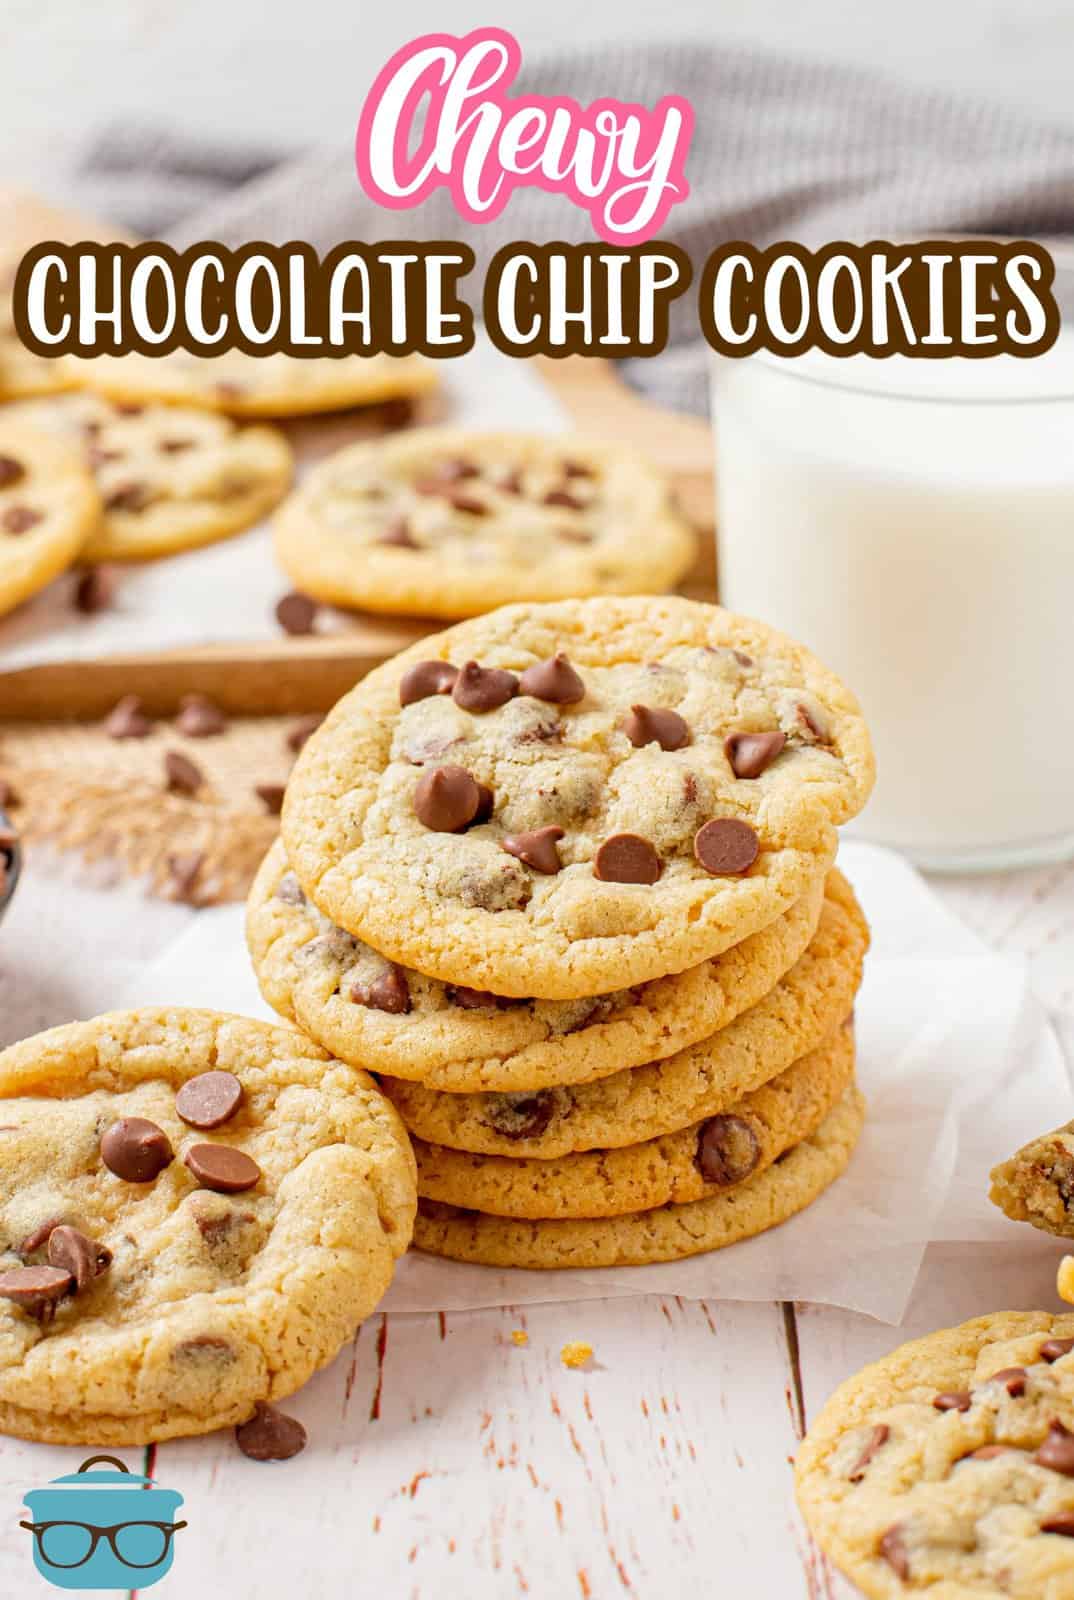 Immagine Pinterest di biscotti gommosi con gocce di cioccolato impilati su carta pergamena con latte dietro di loro.